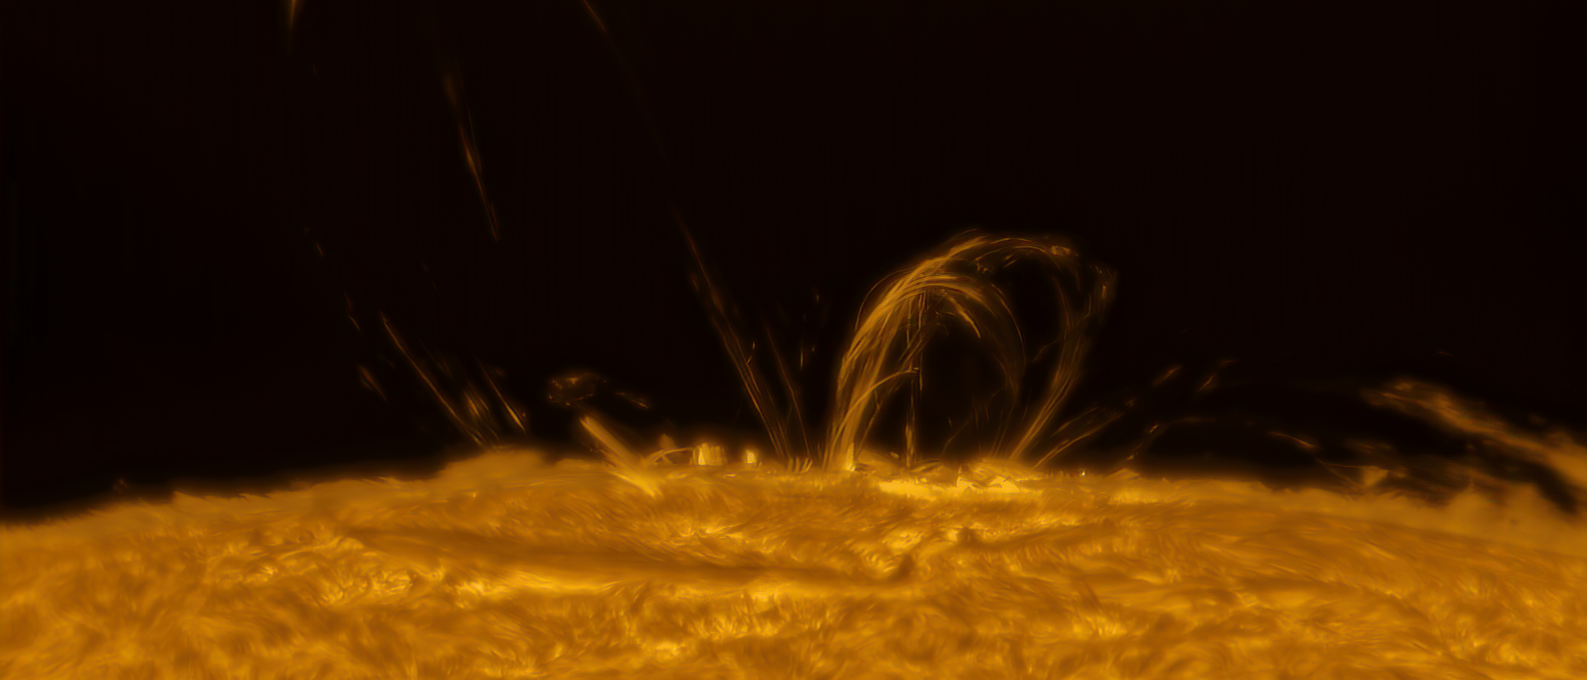 Ein letztes Bild von der Sonnenfleckengruppe, die uns die schönen Polarlichter beschert hatte